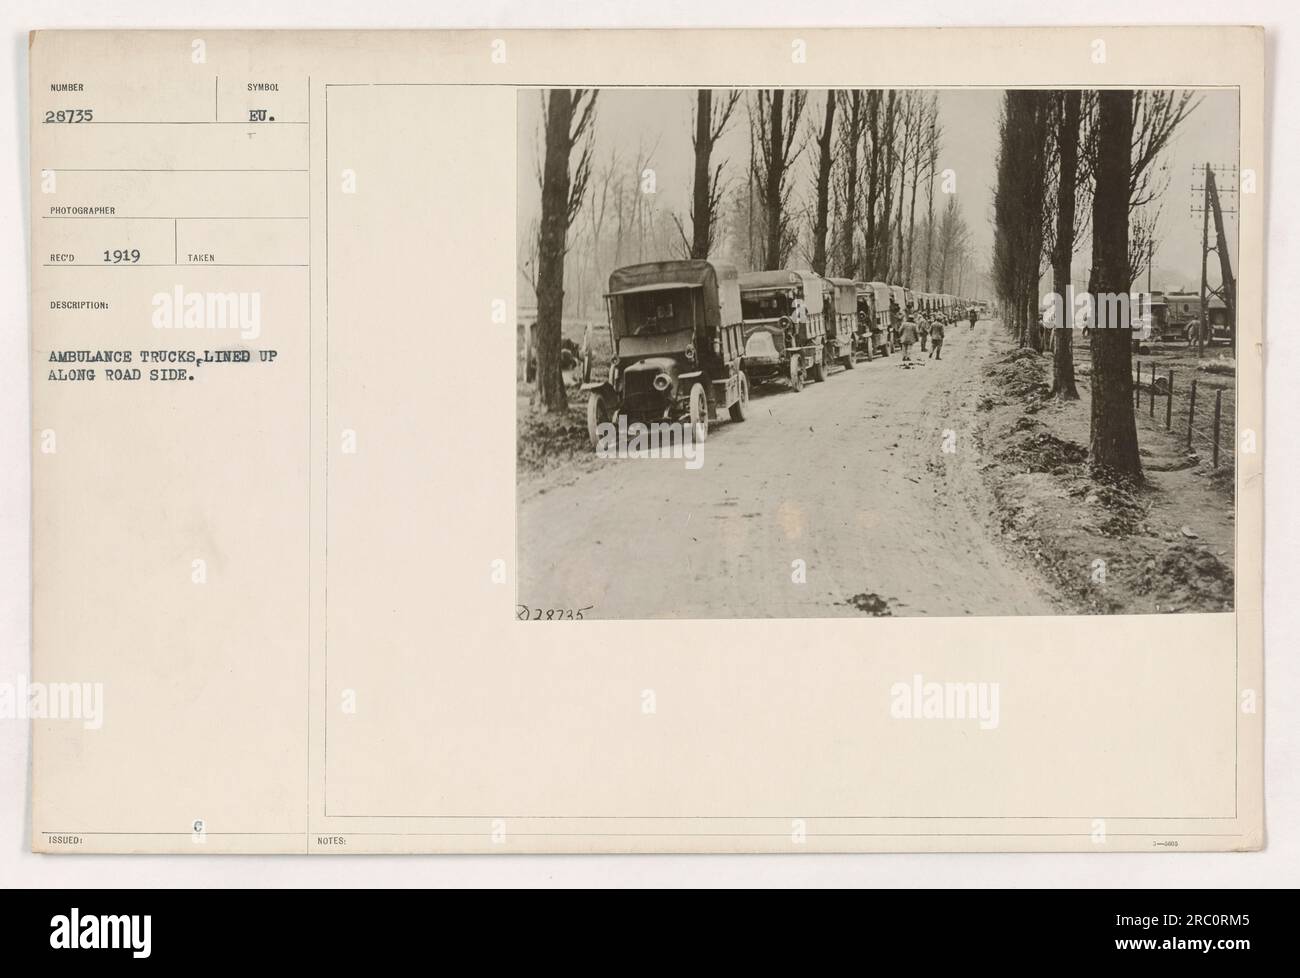 Una linea di camion di ambulanza parcheggiati lungo il lato della strada. La fotografia è stata scattata nel 1919 ed è etichettata come numero 26735 nella collezione. Il fotografo è elencato come "REC". Foto Stock